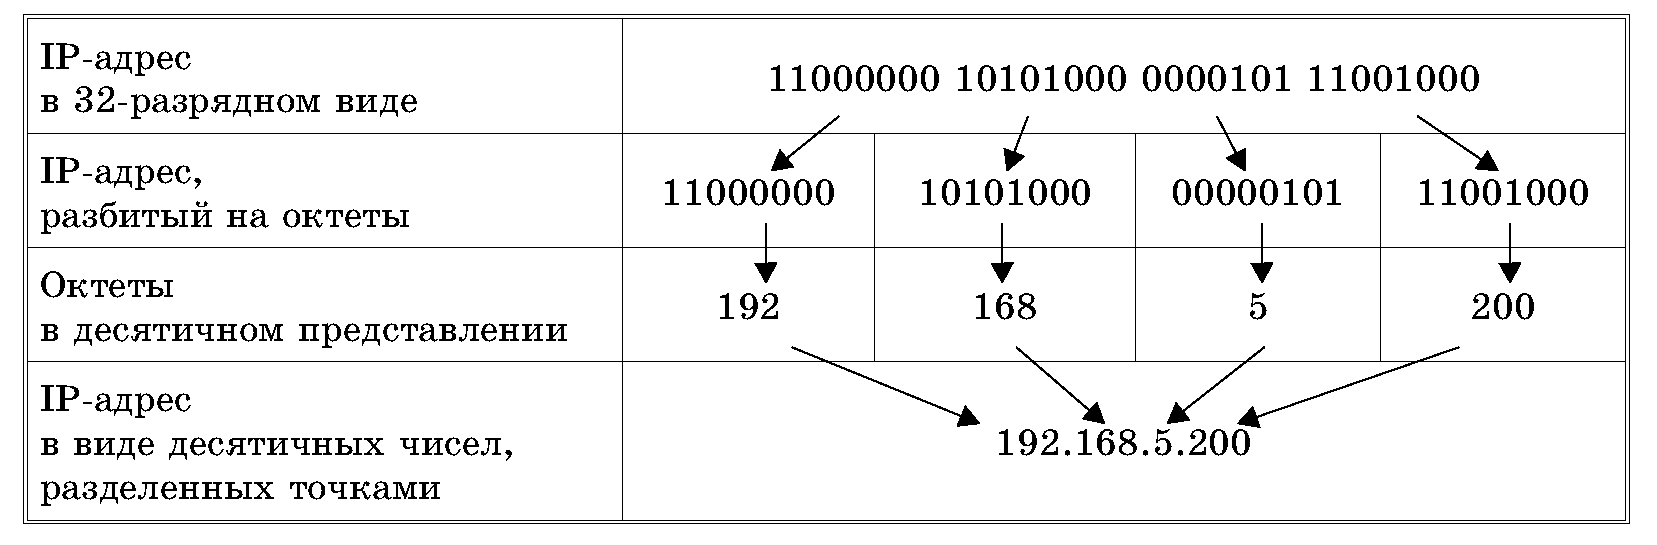 Как присвоить ip адрес. Структура IP адреса. Как записывается IP-адрес компьютера?. Из чего состоит IP адресации. Из чего состоит IP адрес компьютера.